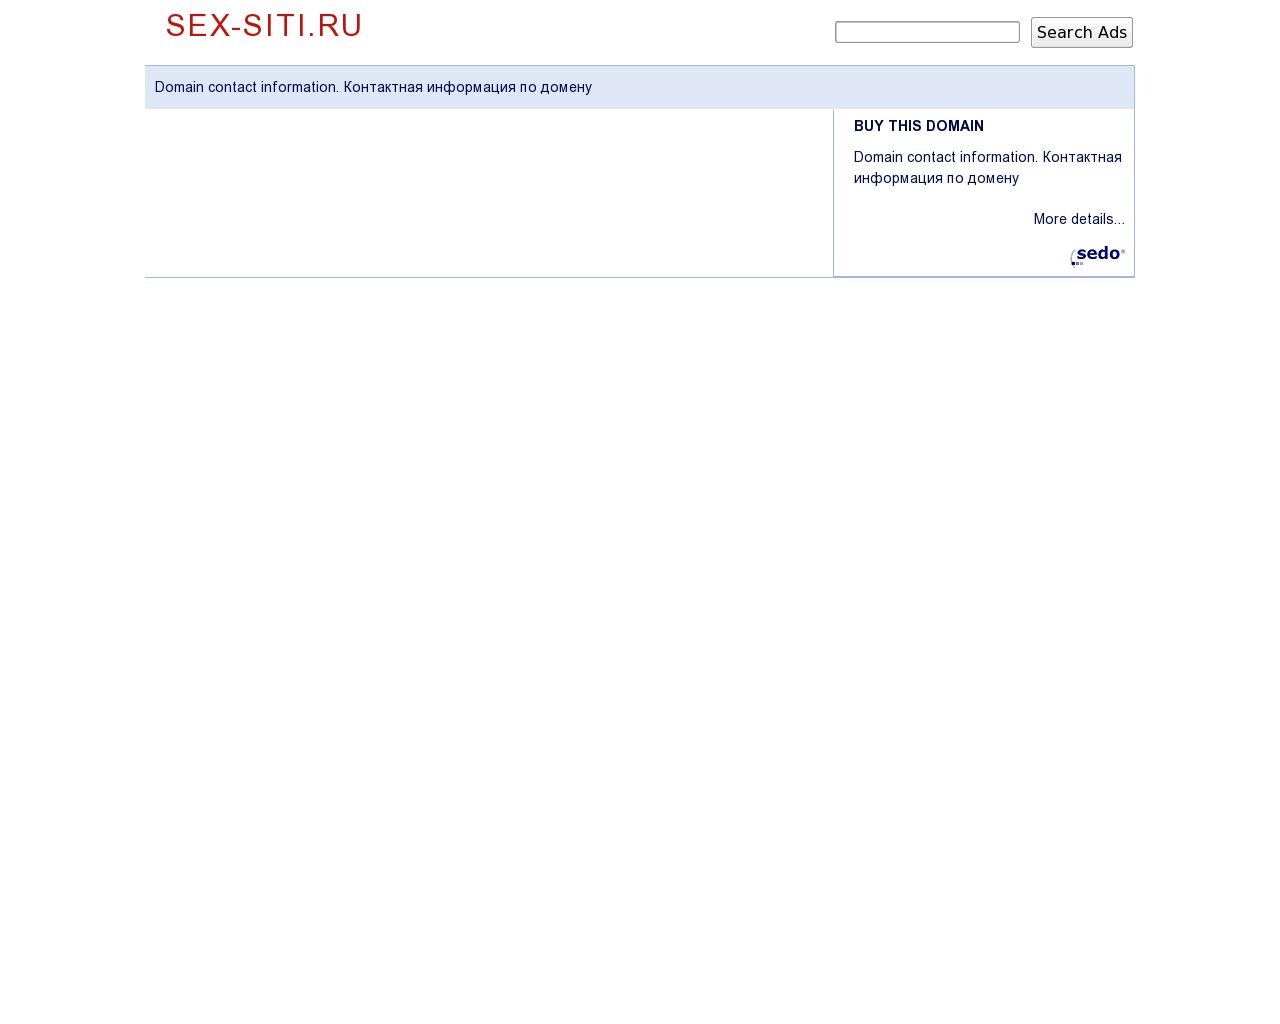 Изображение сайта sex-siti.ru в разрешении 1280x1024